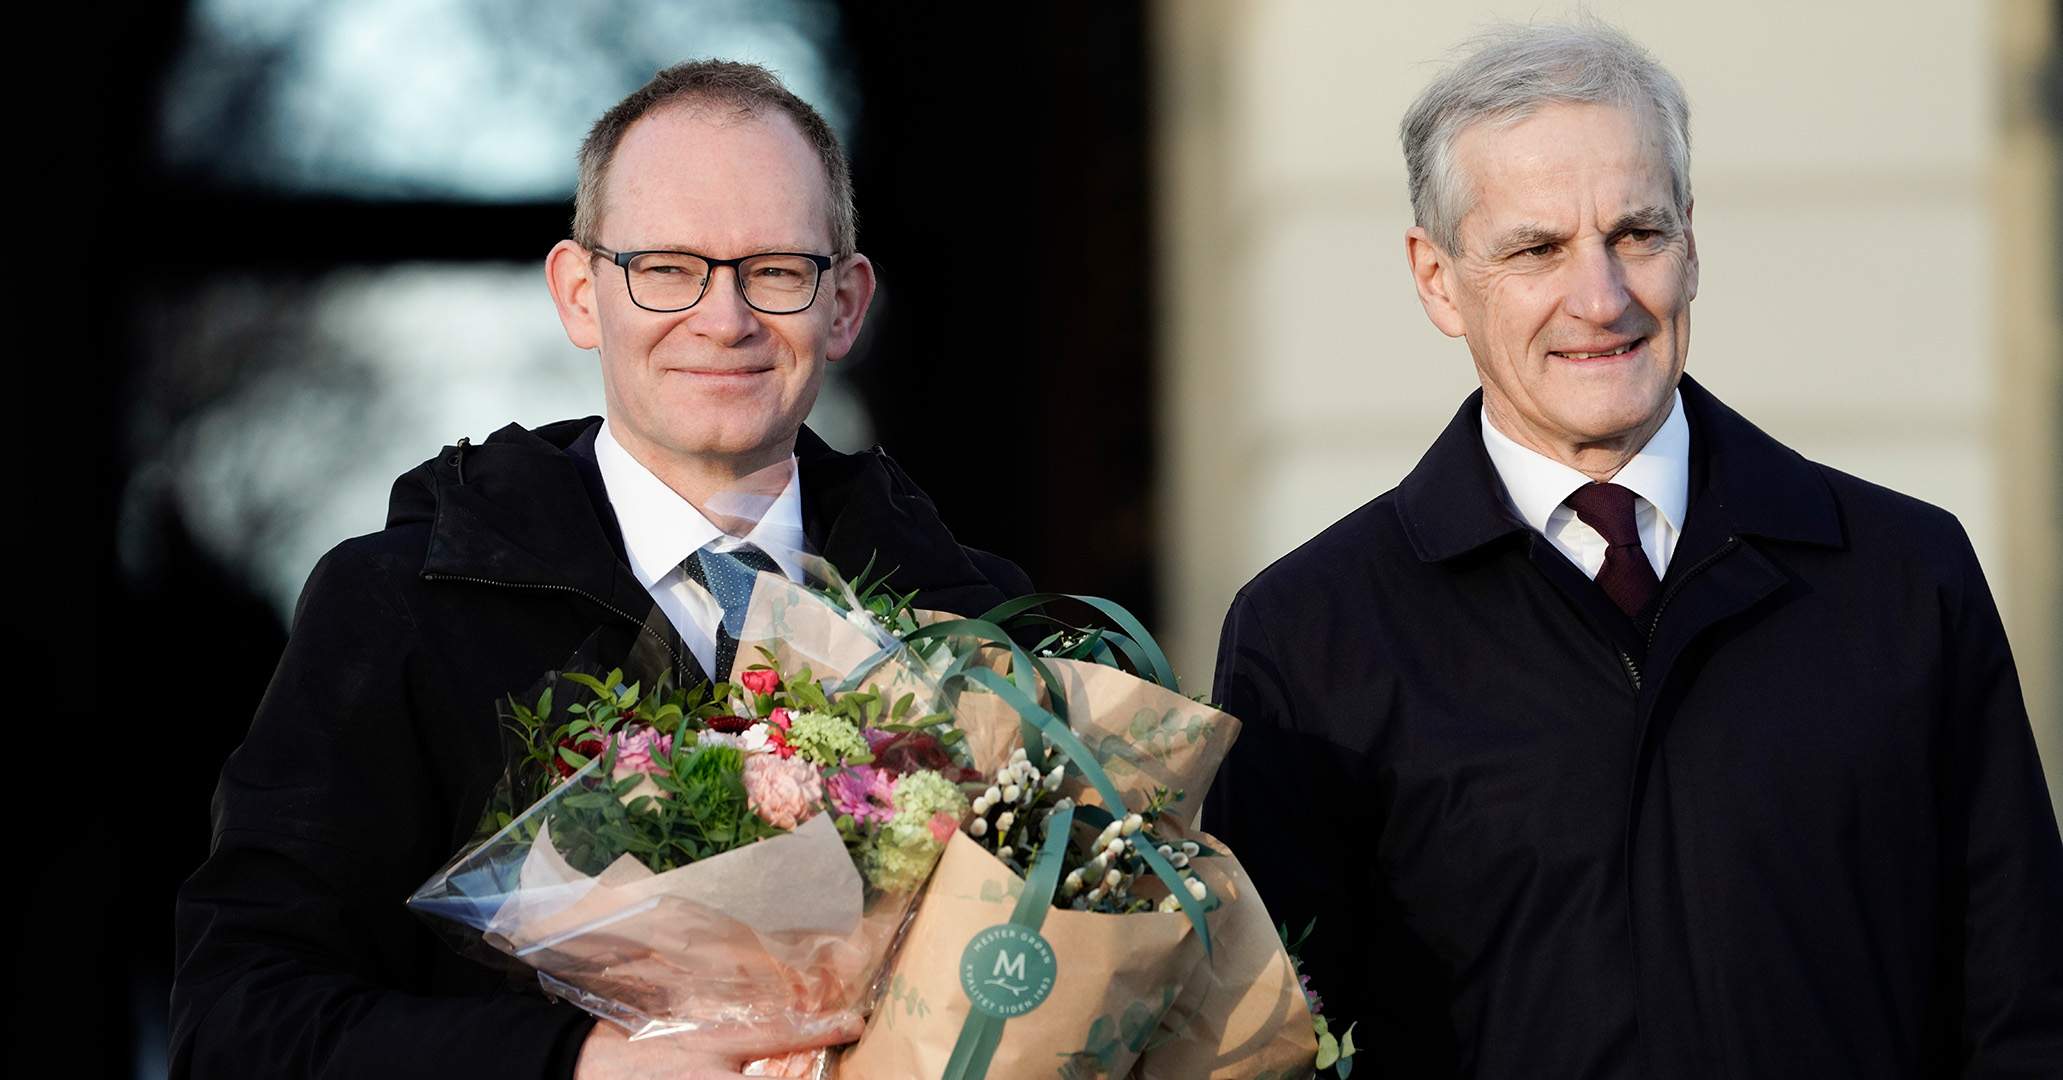 Minister for forskning og høyere utdanning Oddmund Hoel og statsminister Jonas Gahr Støre på Slottsplassen med blomster og smil